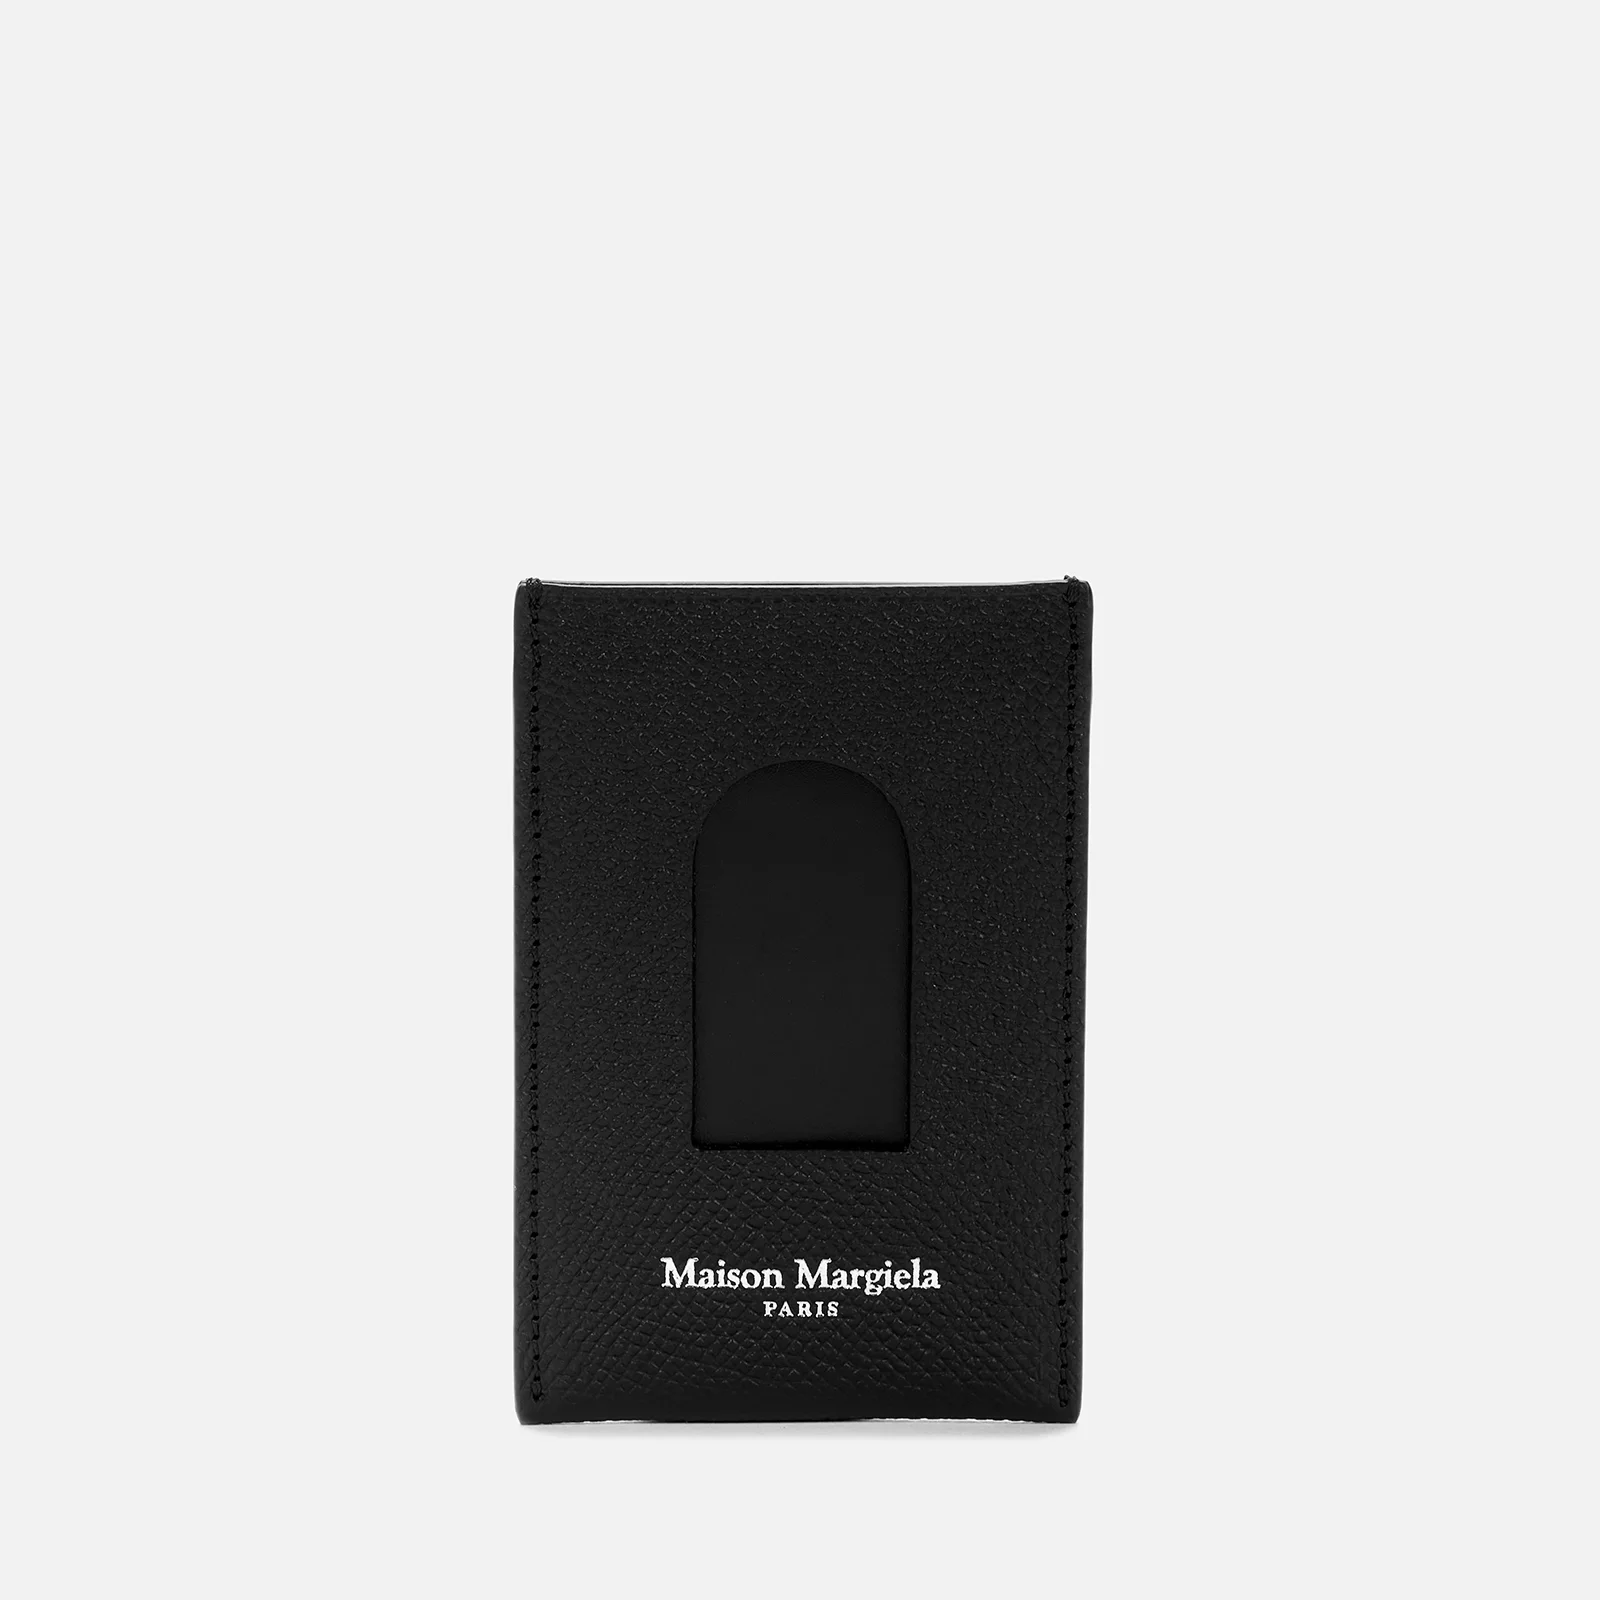 Maison Margiela Men's Two Card Sleeve - Black Image 1